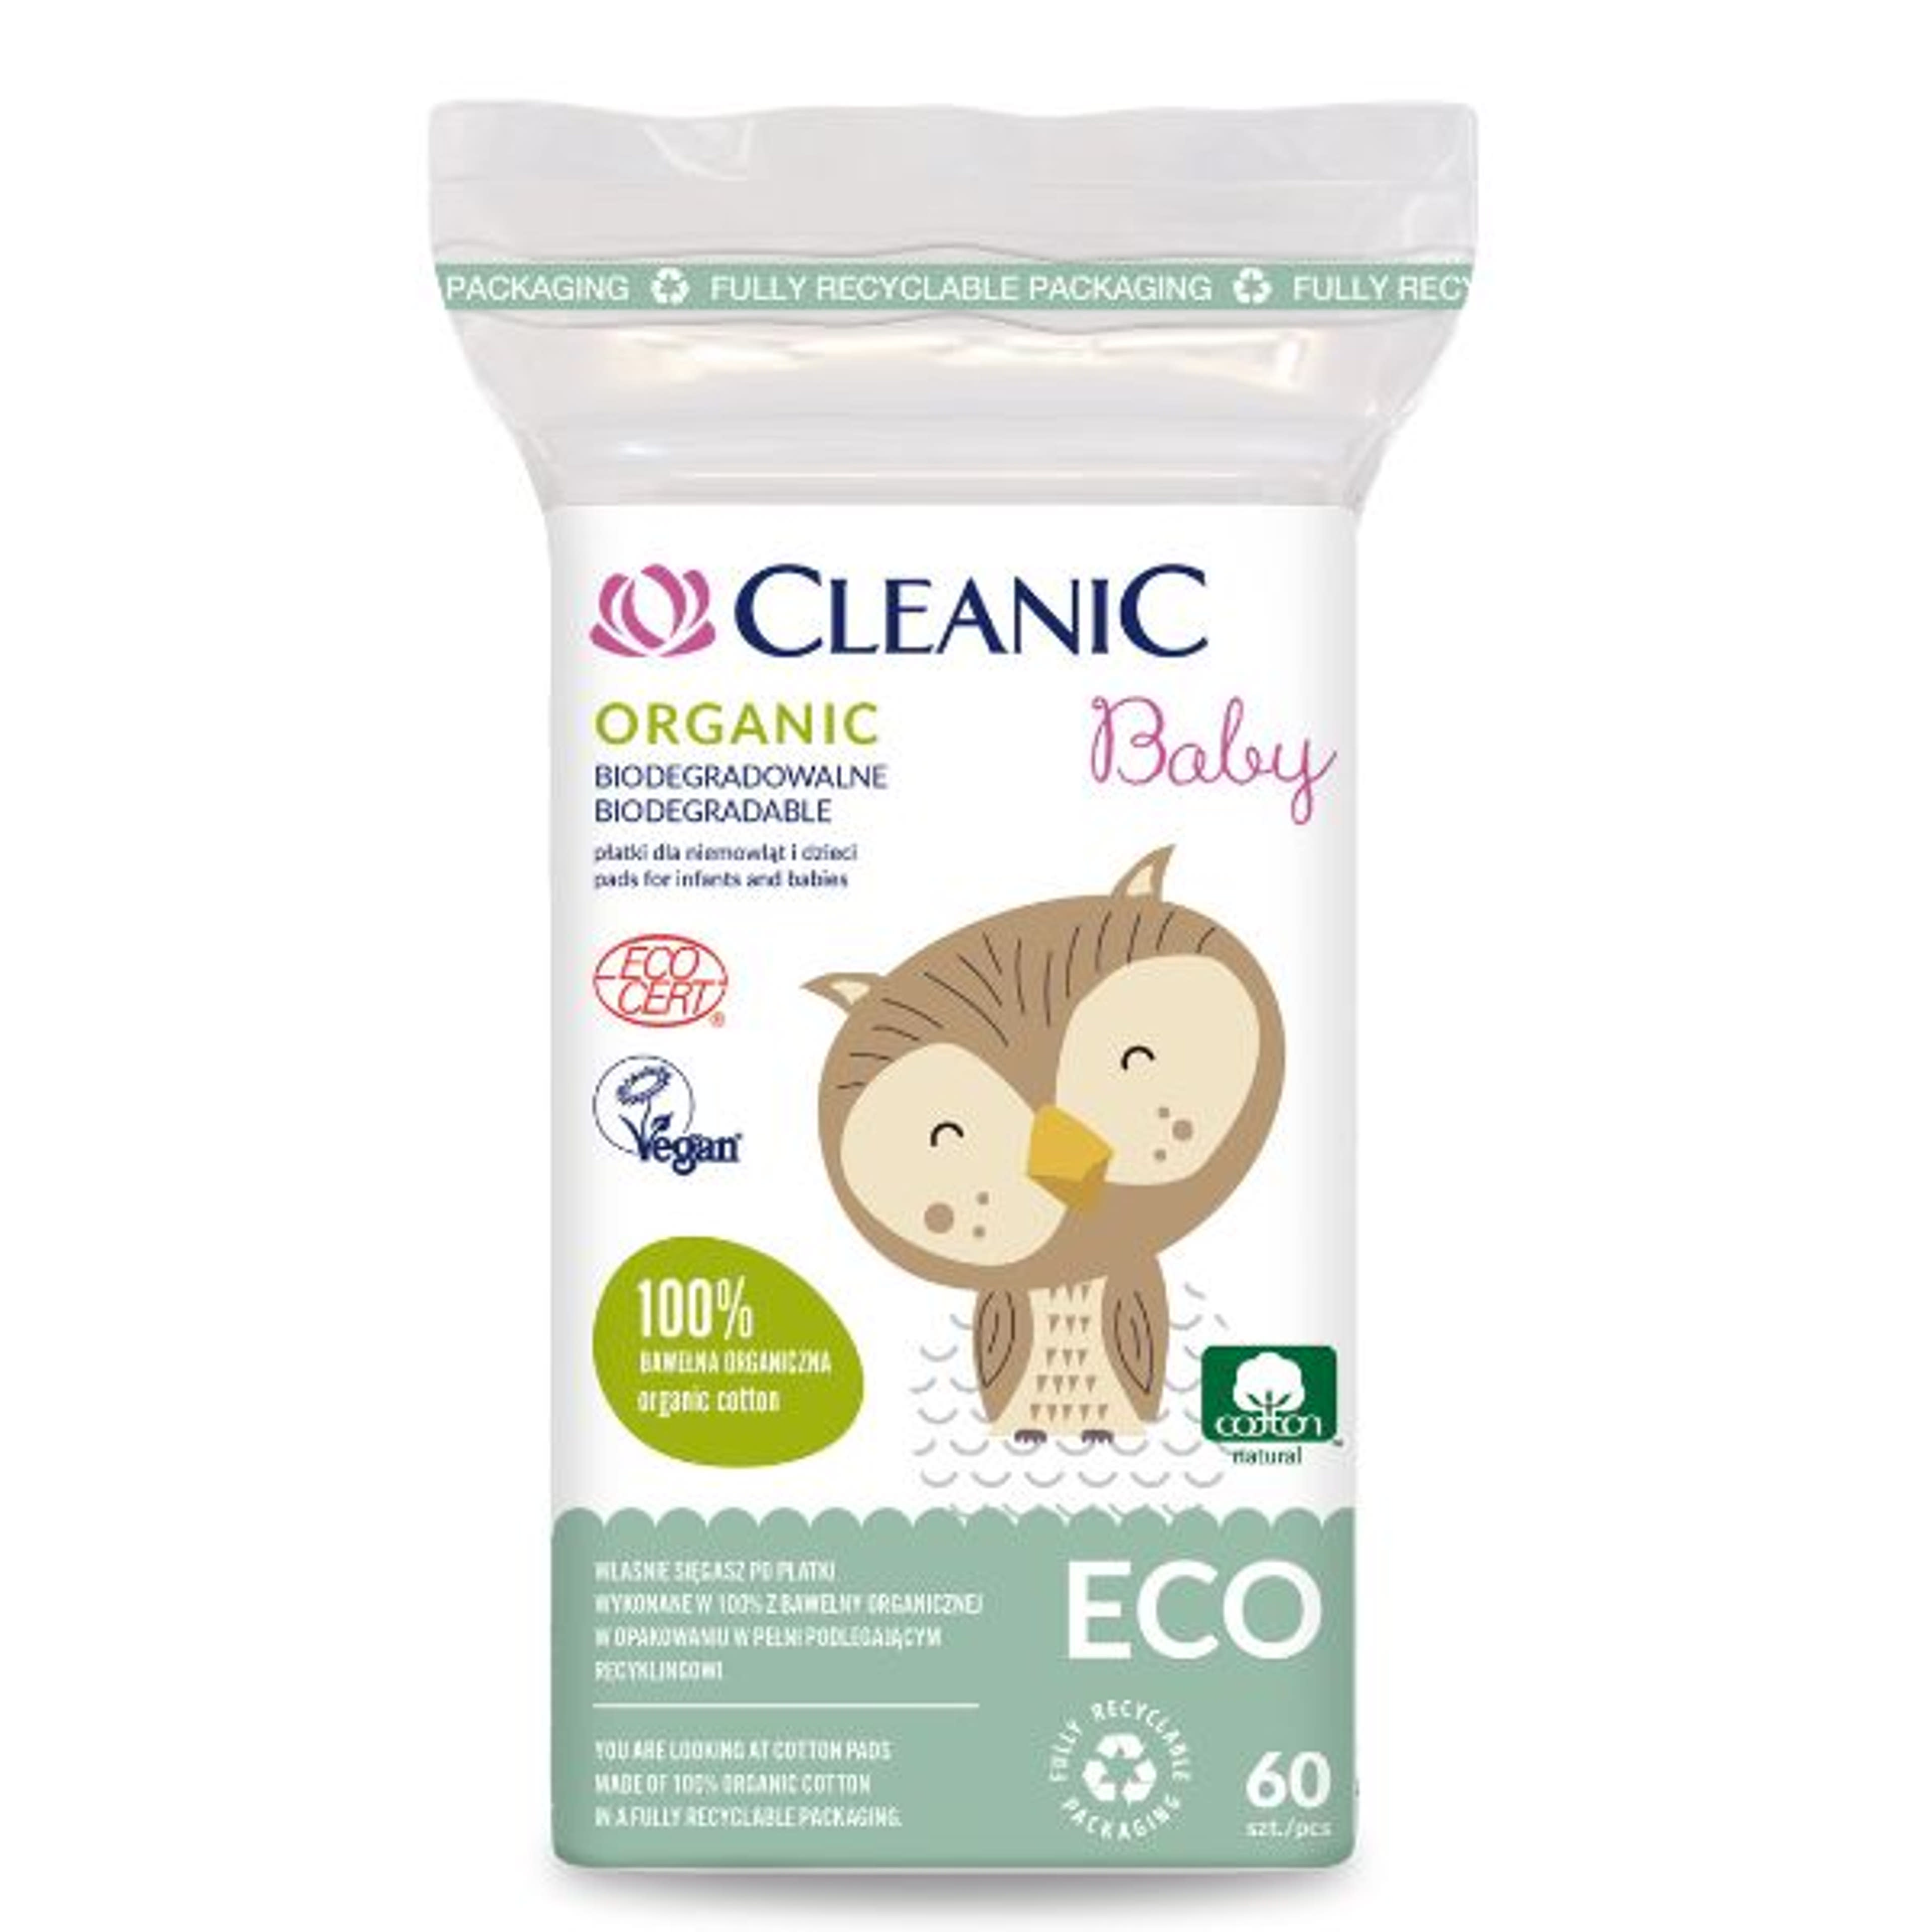 Cleanic baby Eco Organic vattakorong - 60 db